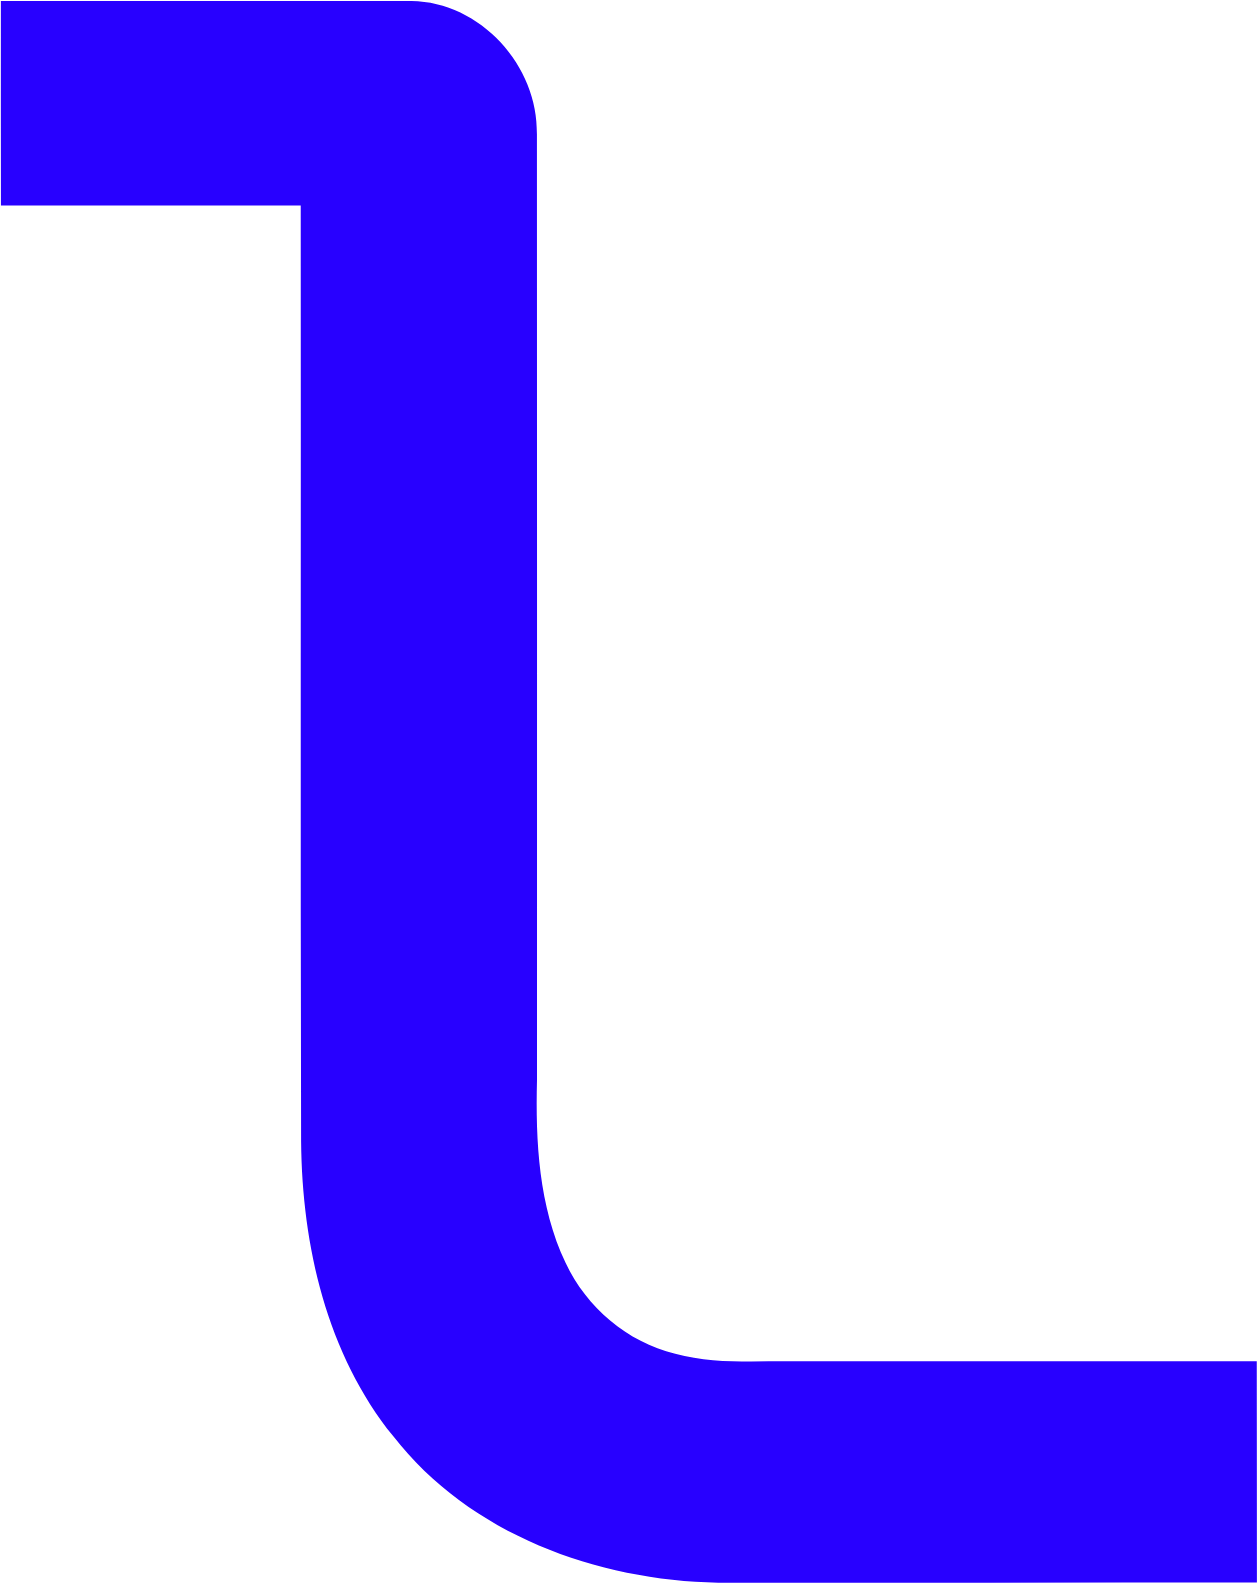 Logista (Compañía de Distribución Integral Logista) logo (transparent PNG)